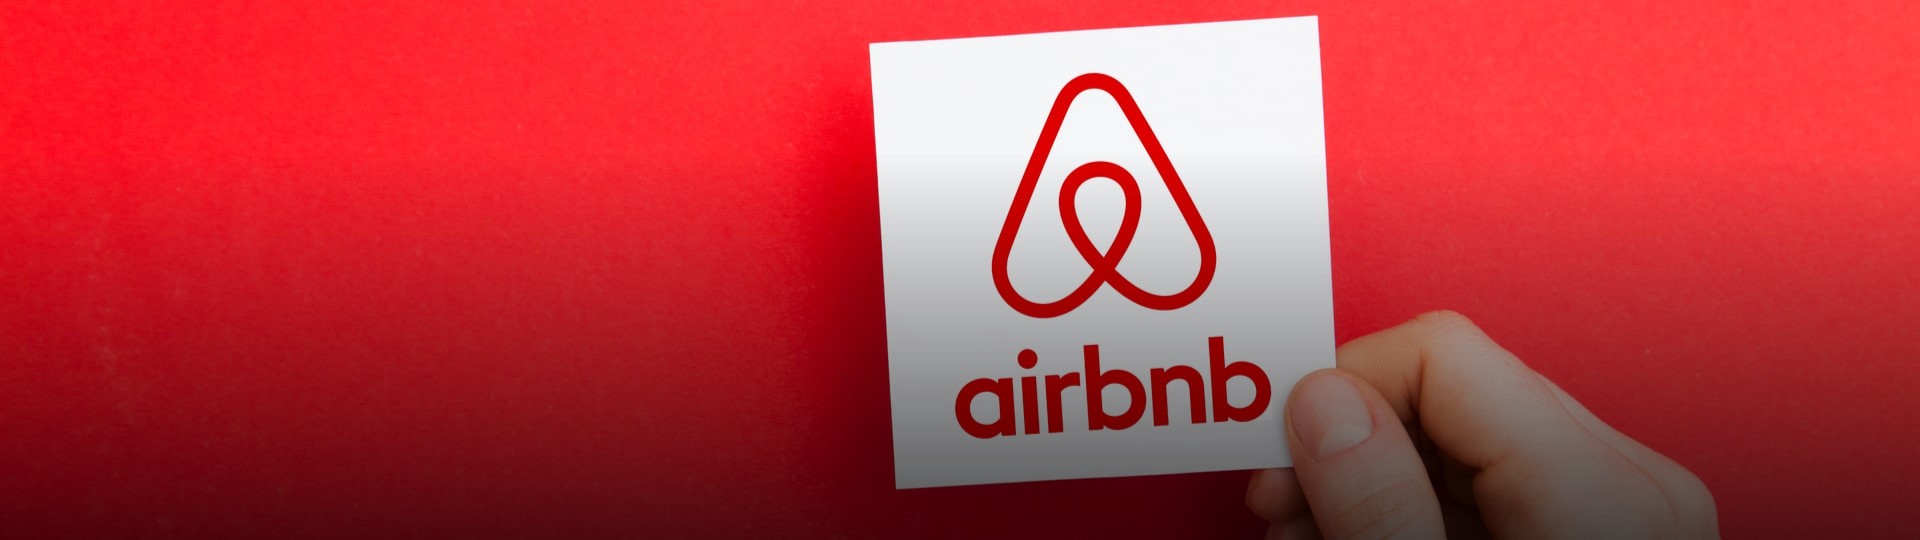 Airbnb před vstupem na burzu prodala akcie dráž, než plánovala